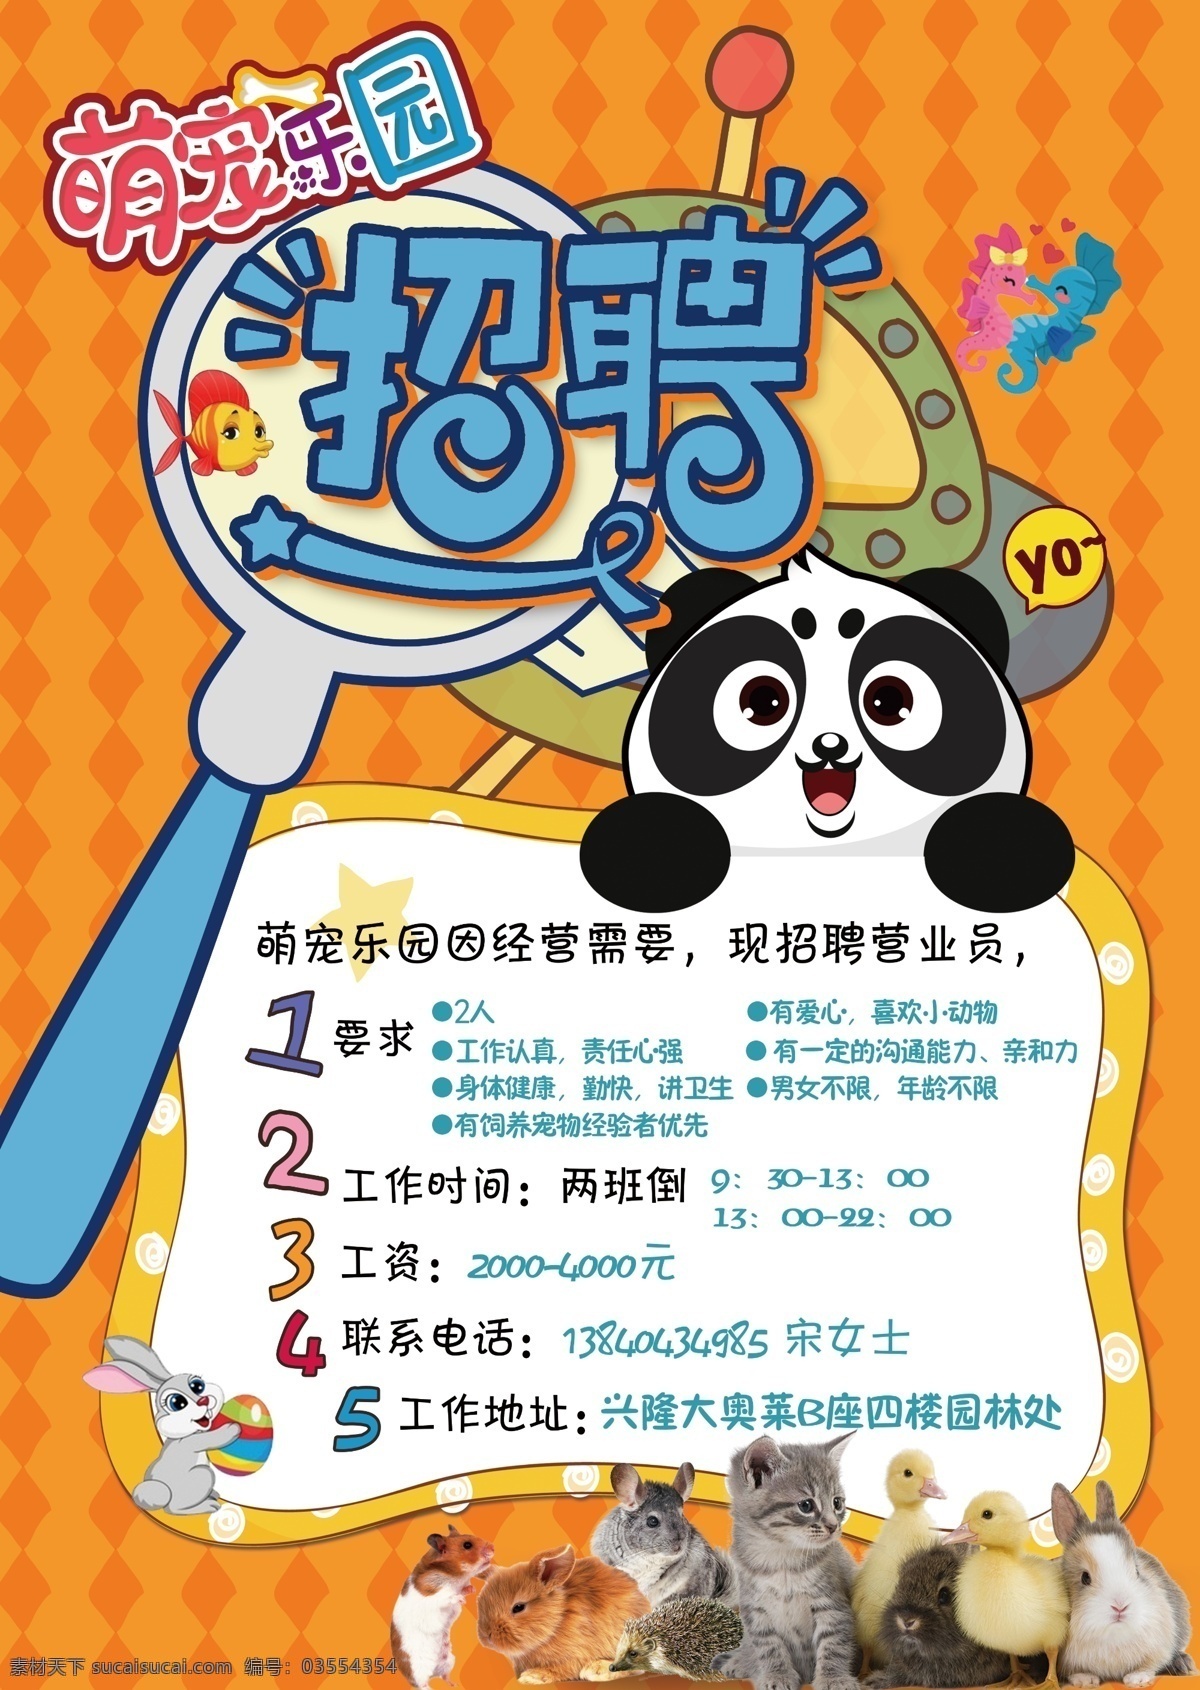 卡通招聘海报 招聘 卡通动物 宠物 卡通背景 动物 卡通熊猫 宠物乐园 萌宠乐园 dm宣传单